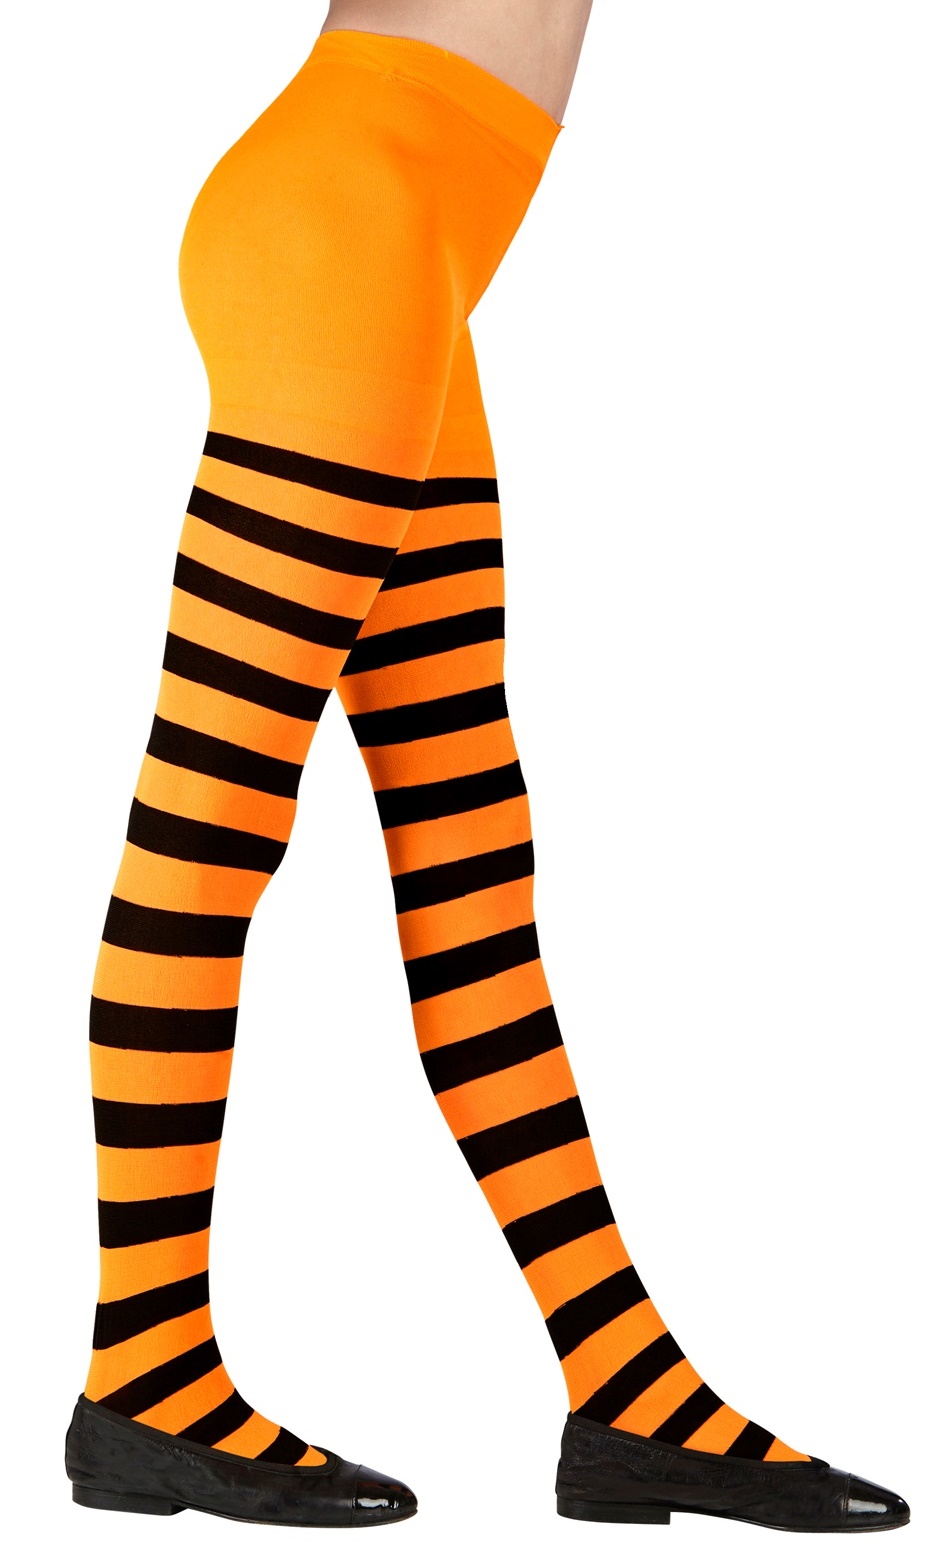 medias en color Naranja para Disfraces